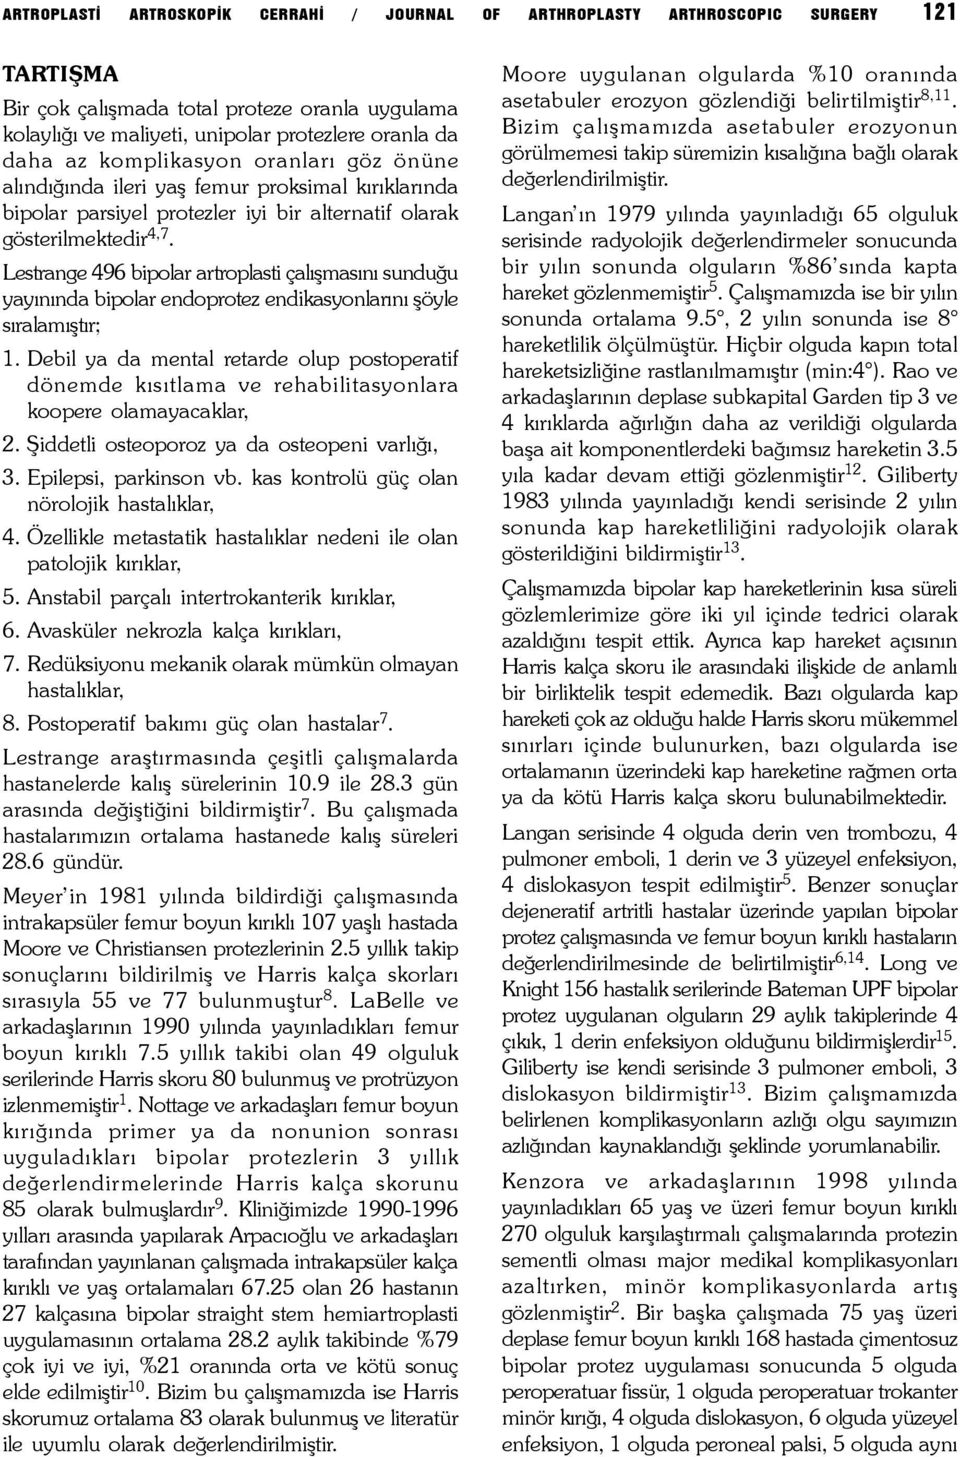 Lestrange 496 bipolar artroplasti çalýþmasýný sunduðu yayýnýnda bipolar endoprotez endikasyonlarýný þöyle sýralamýþtýr; 1.